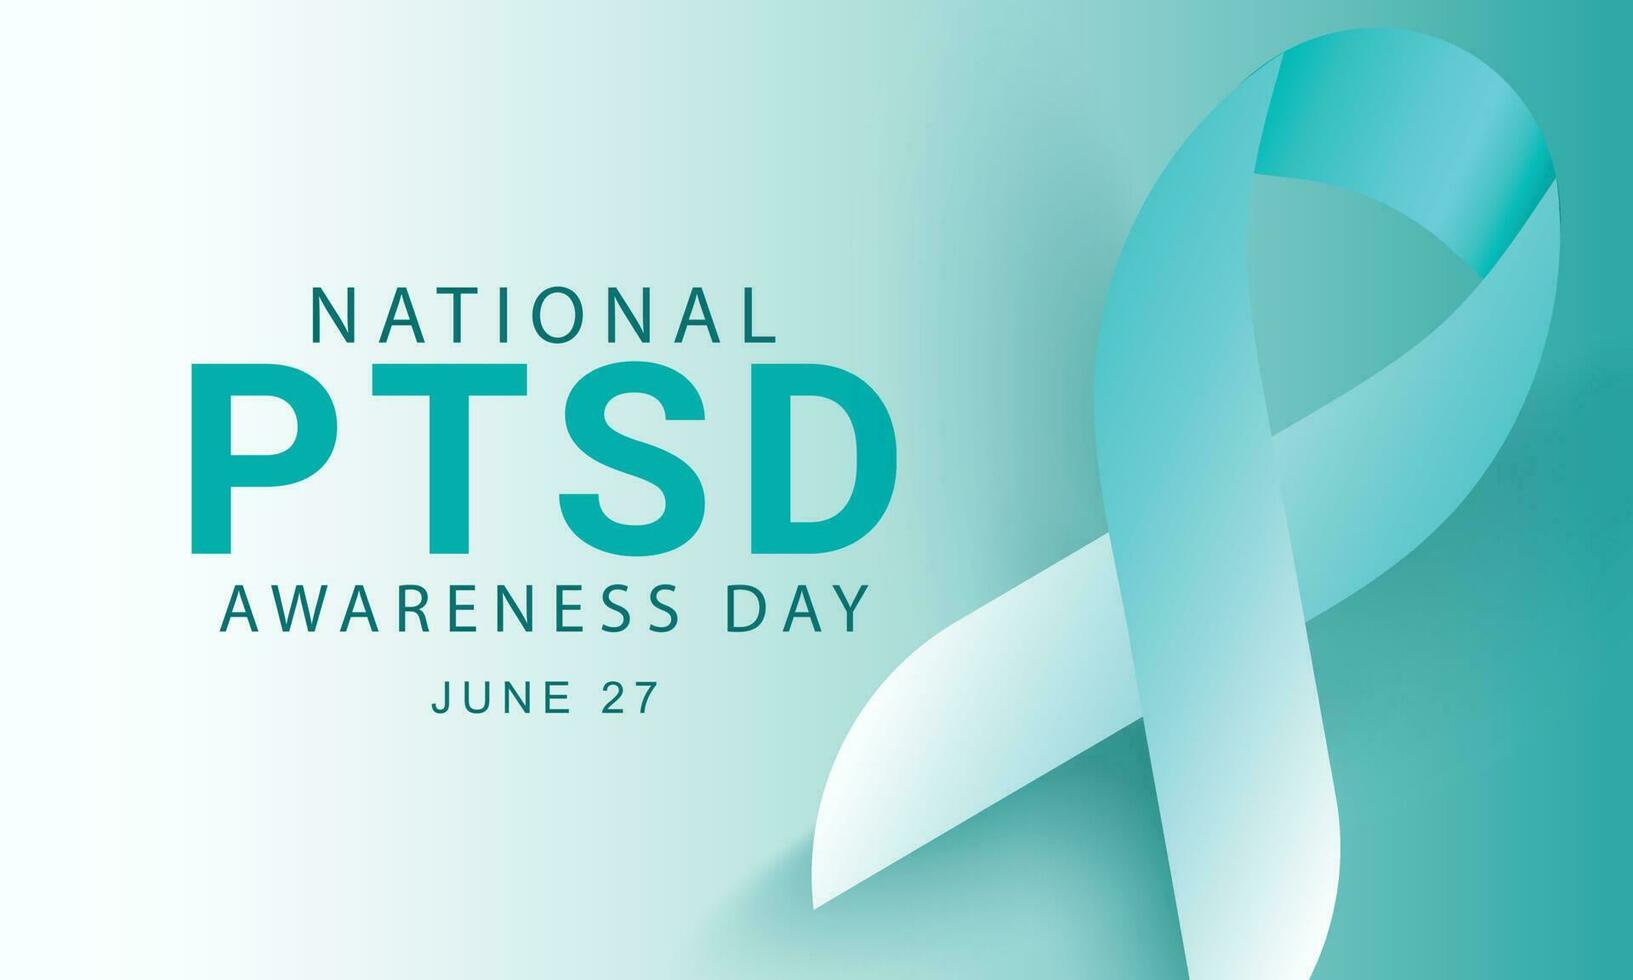 National PTSD awareness day